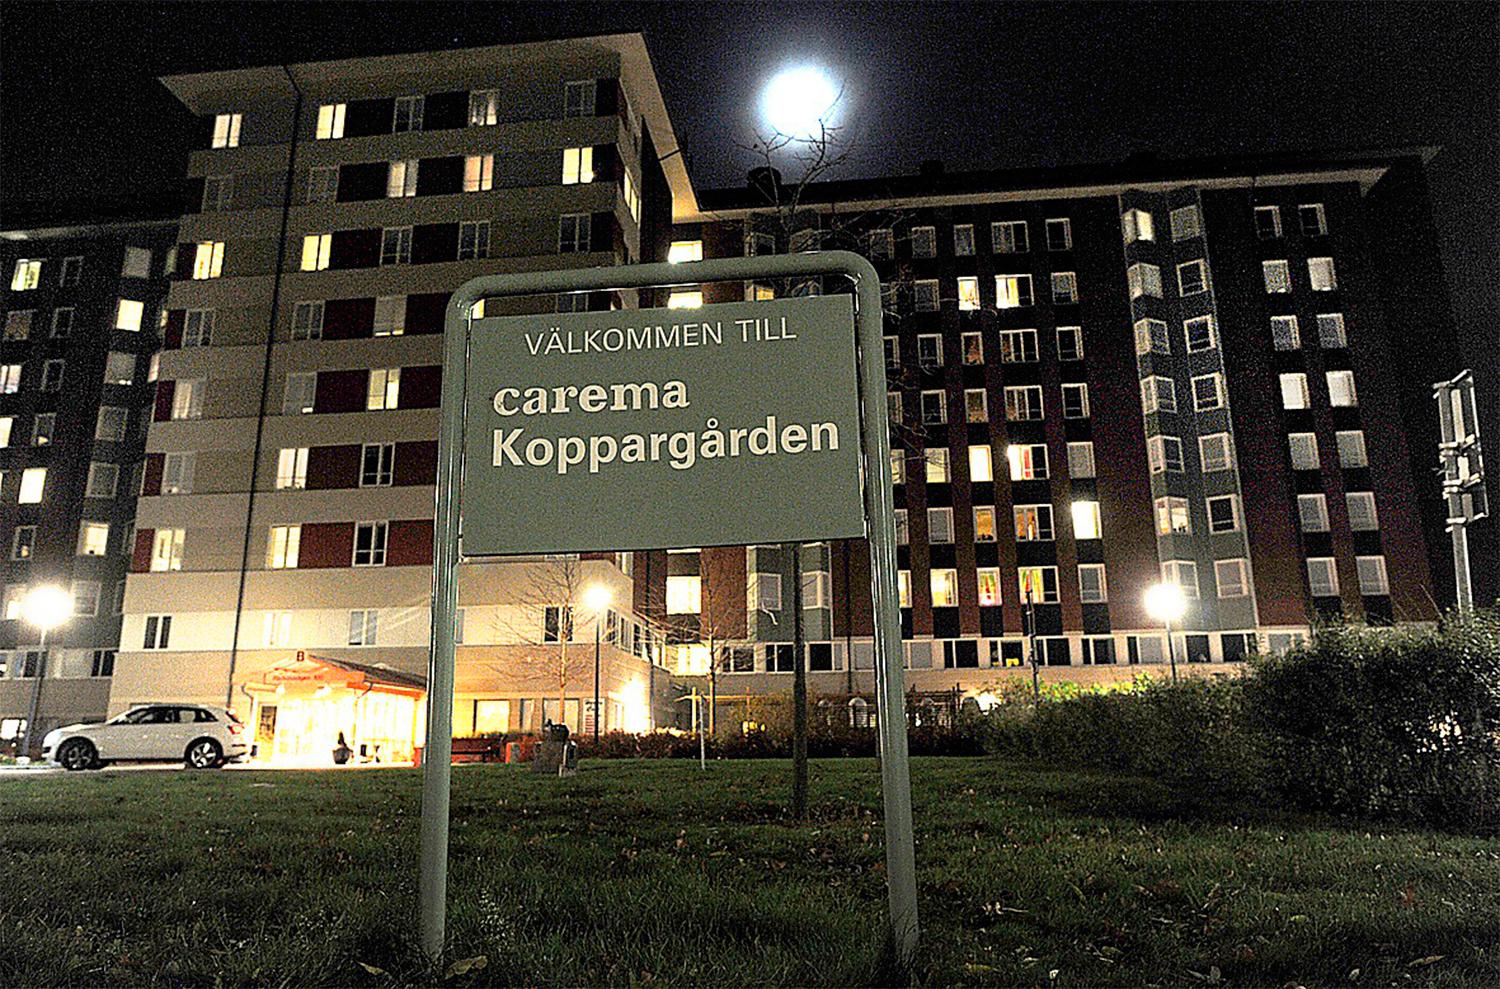 Caremaskandalen på Koppargården i Stockholm startade debatten om riskkaptalbolag i välfärden. I dag har Carema bytt namn till Vardaga. Foto: Urban Andersson